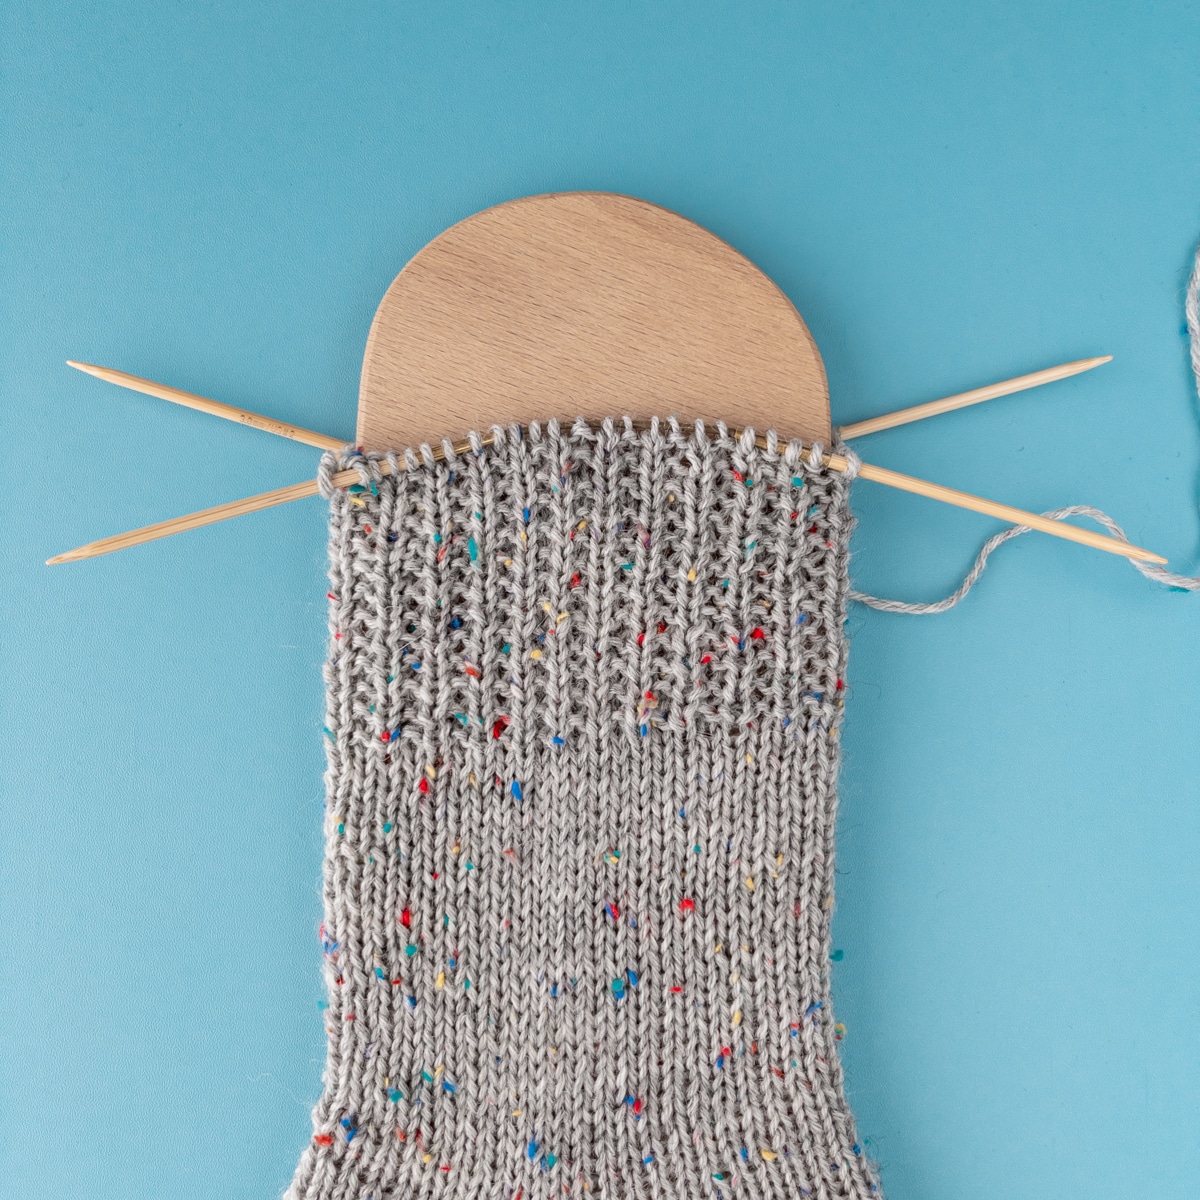 Unterbrochenes Rippenmuster/ Perlrippenmuster an einer Toe-up Socke mit addiCraSyTrio Bamboo